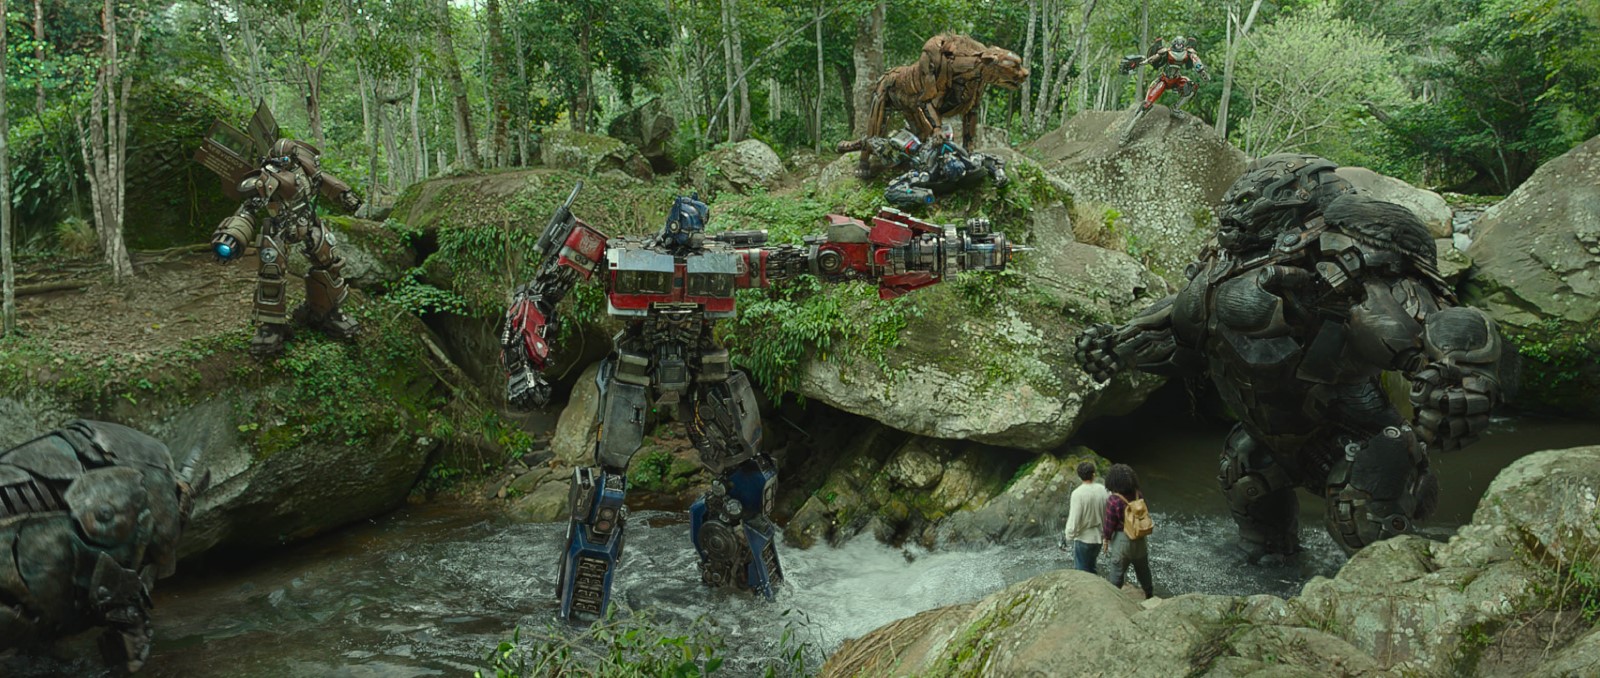 Foto do filme Transformers: O Despertar das Feras - Foto 8 de 40 -  AdoroCinema